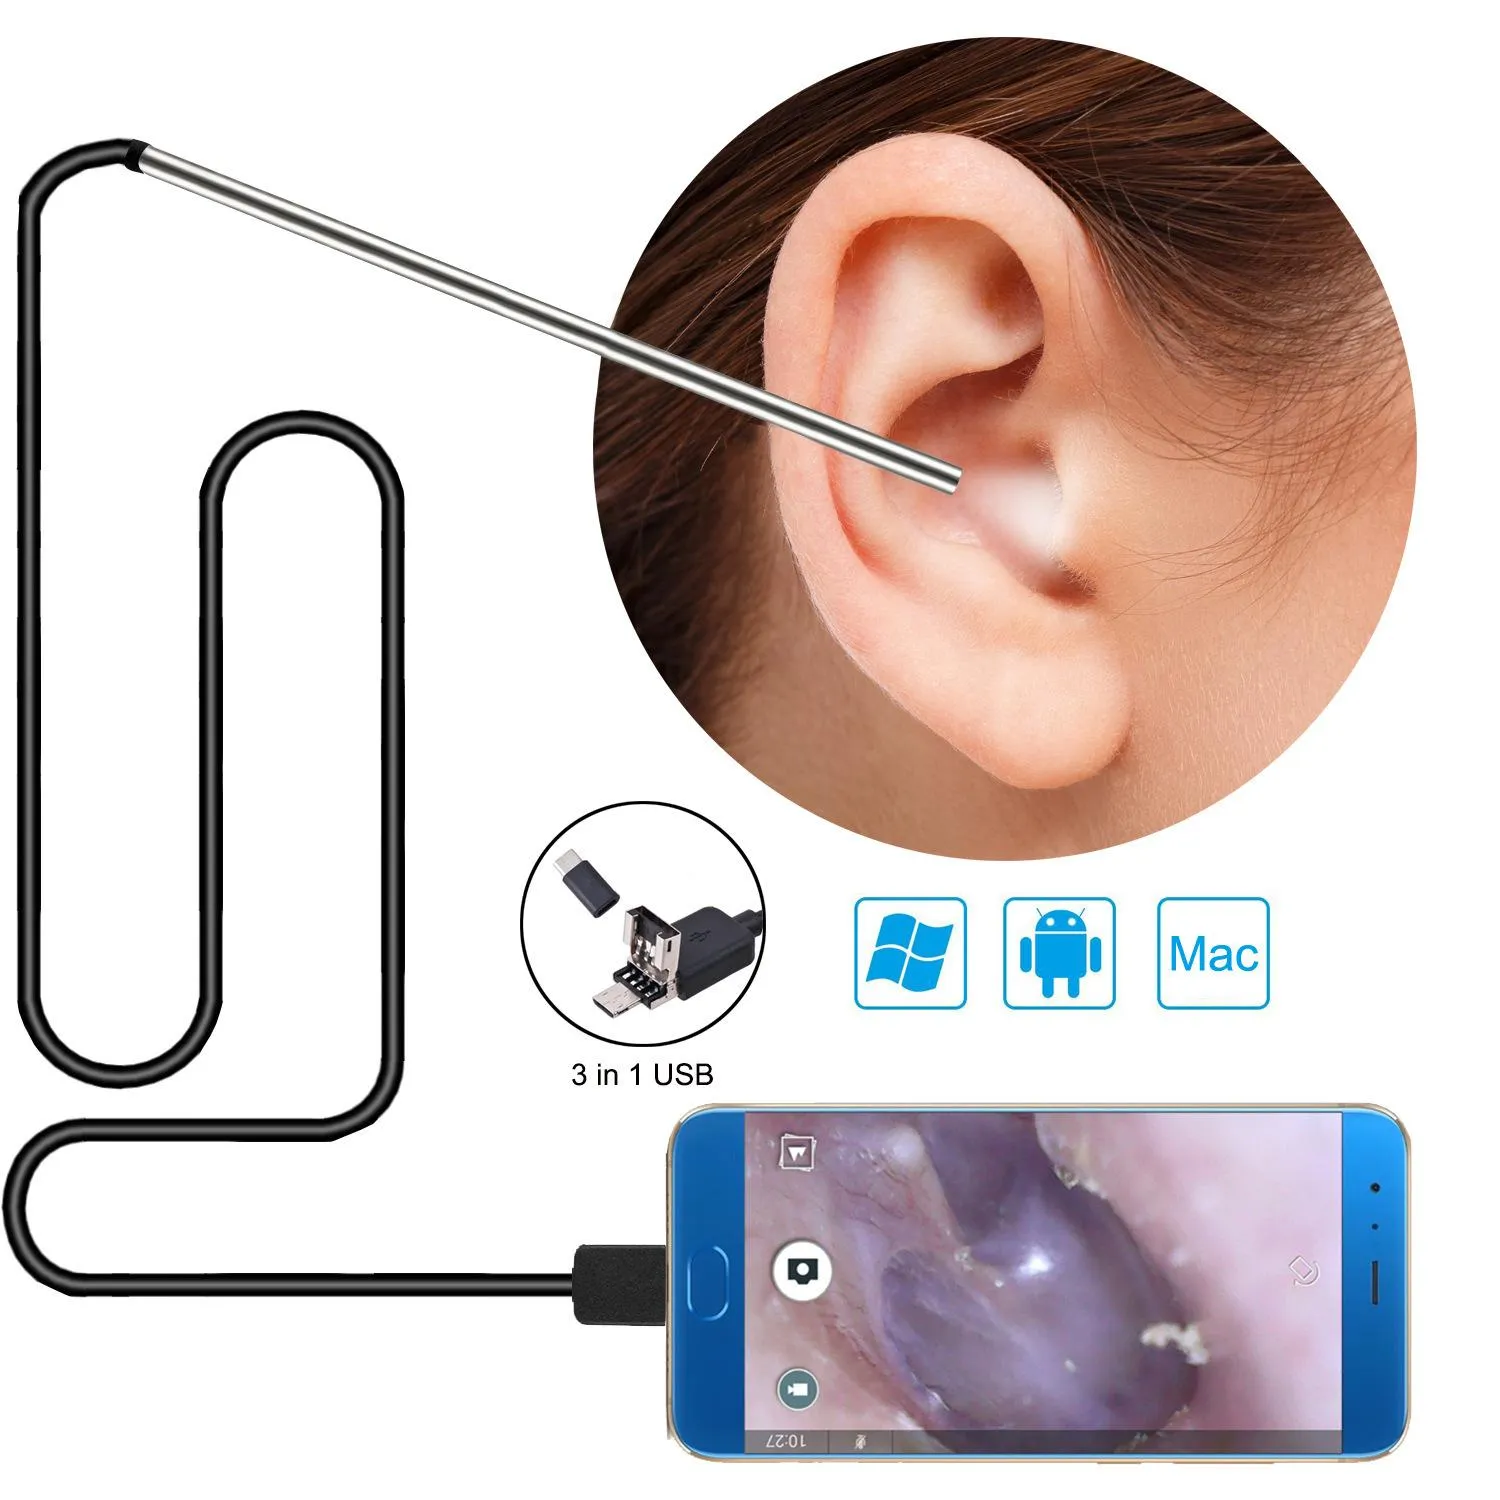 ケア3 in 1耳のワックス除去ツールUSBオトスコペアスコープ耳洗浄内視鏡視覚耳スプーン5.5mmイヤピック耳鏡